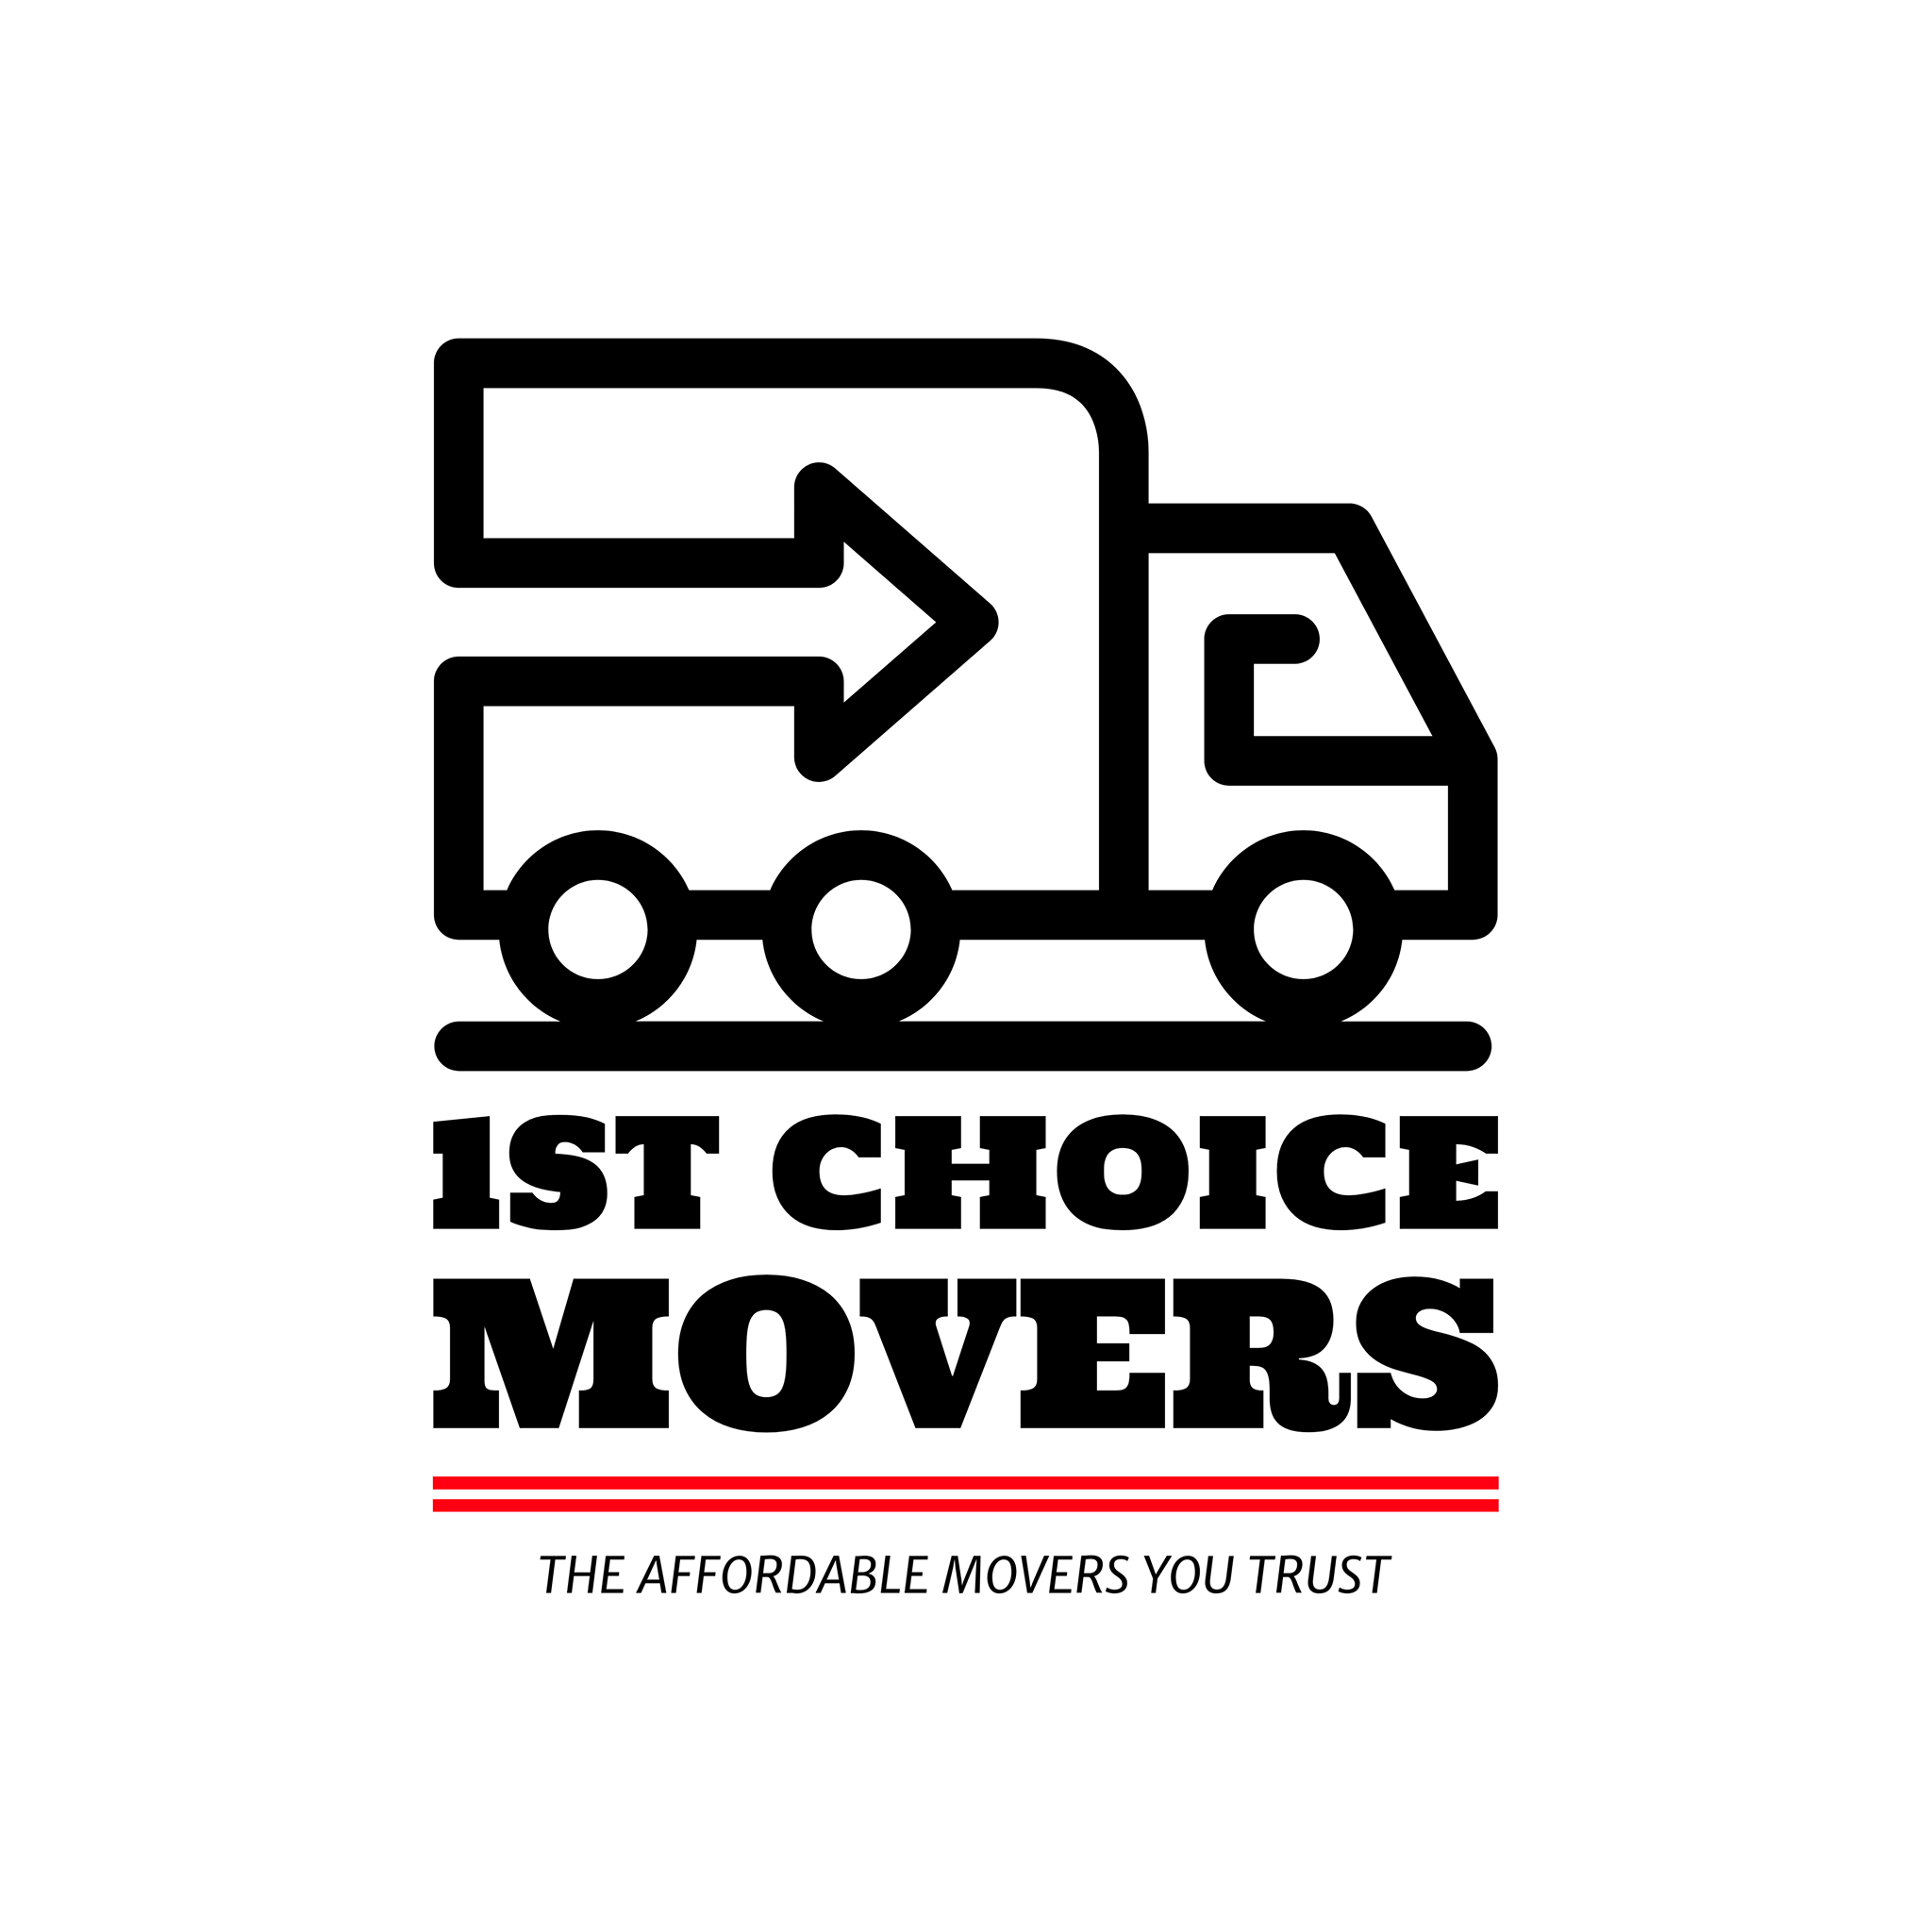 1st choice movers company logo